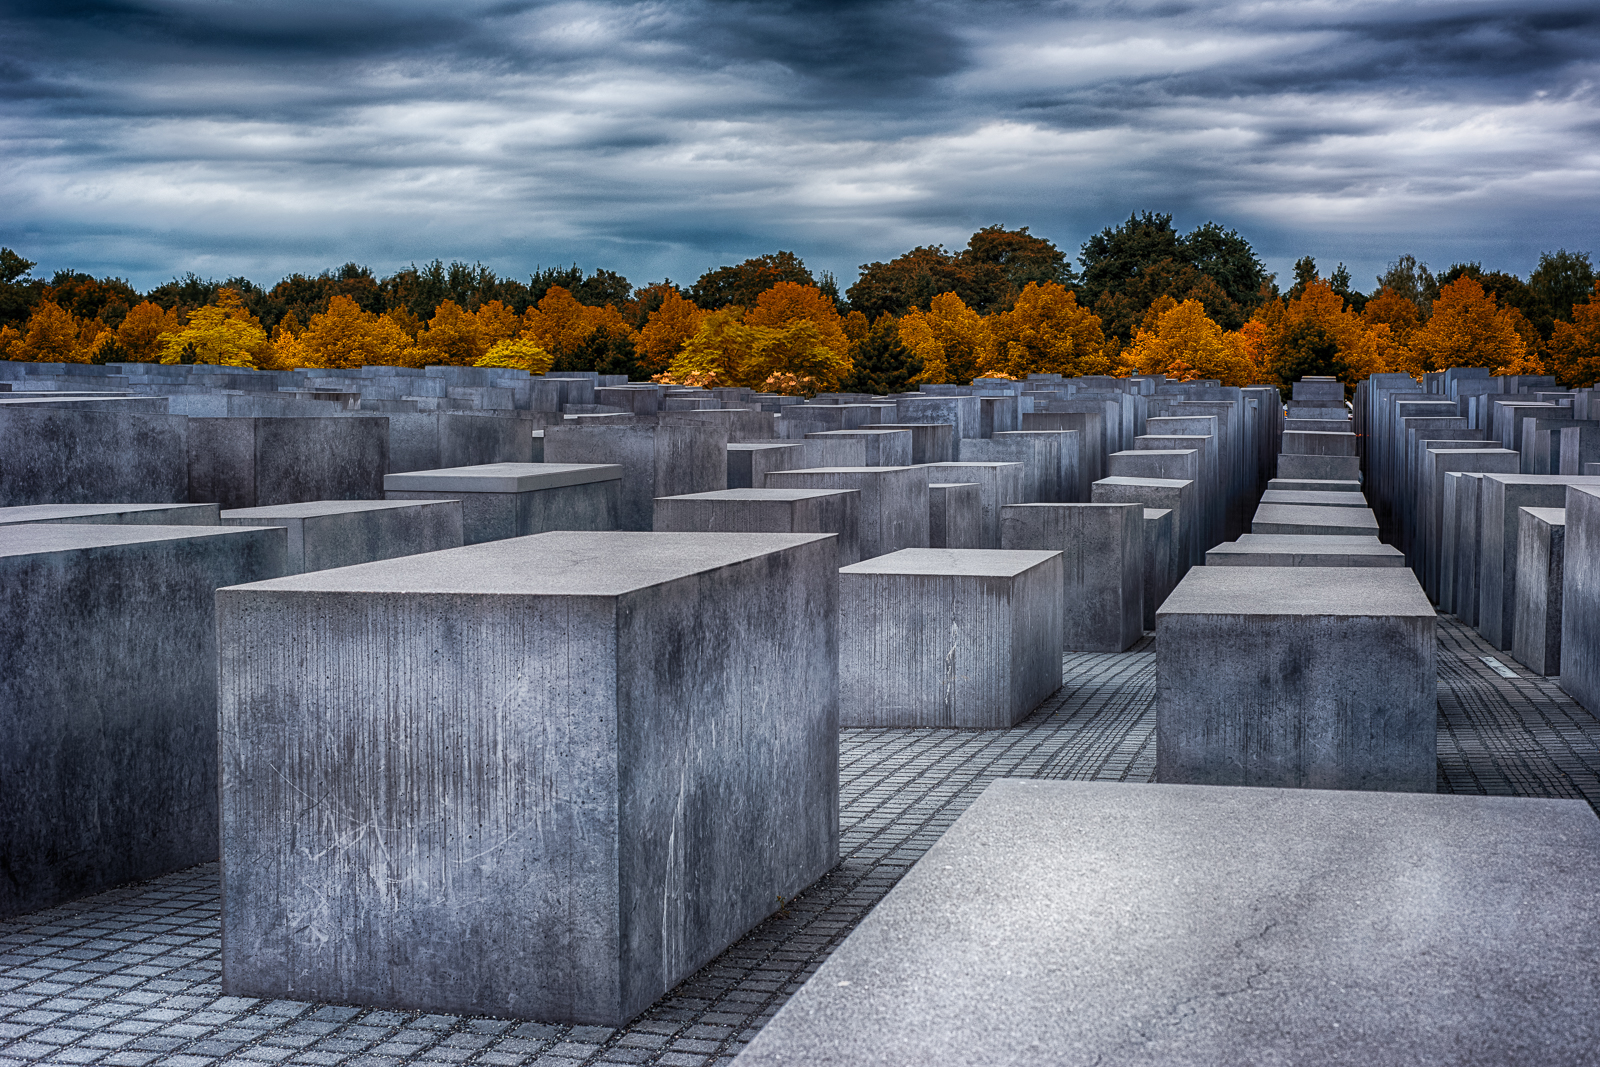 holocaust memorial in Berlin - image by artist Ali Ertürk